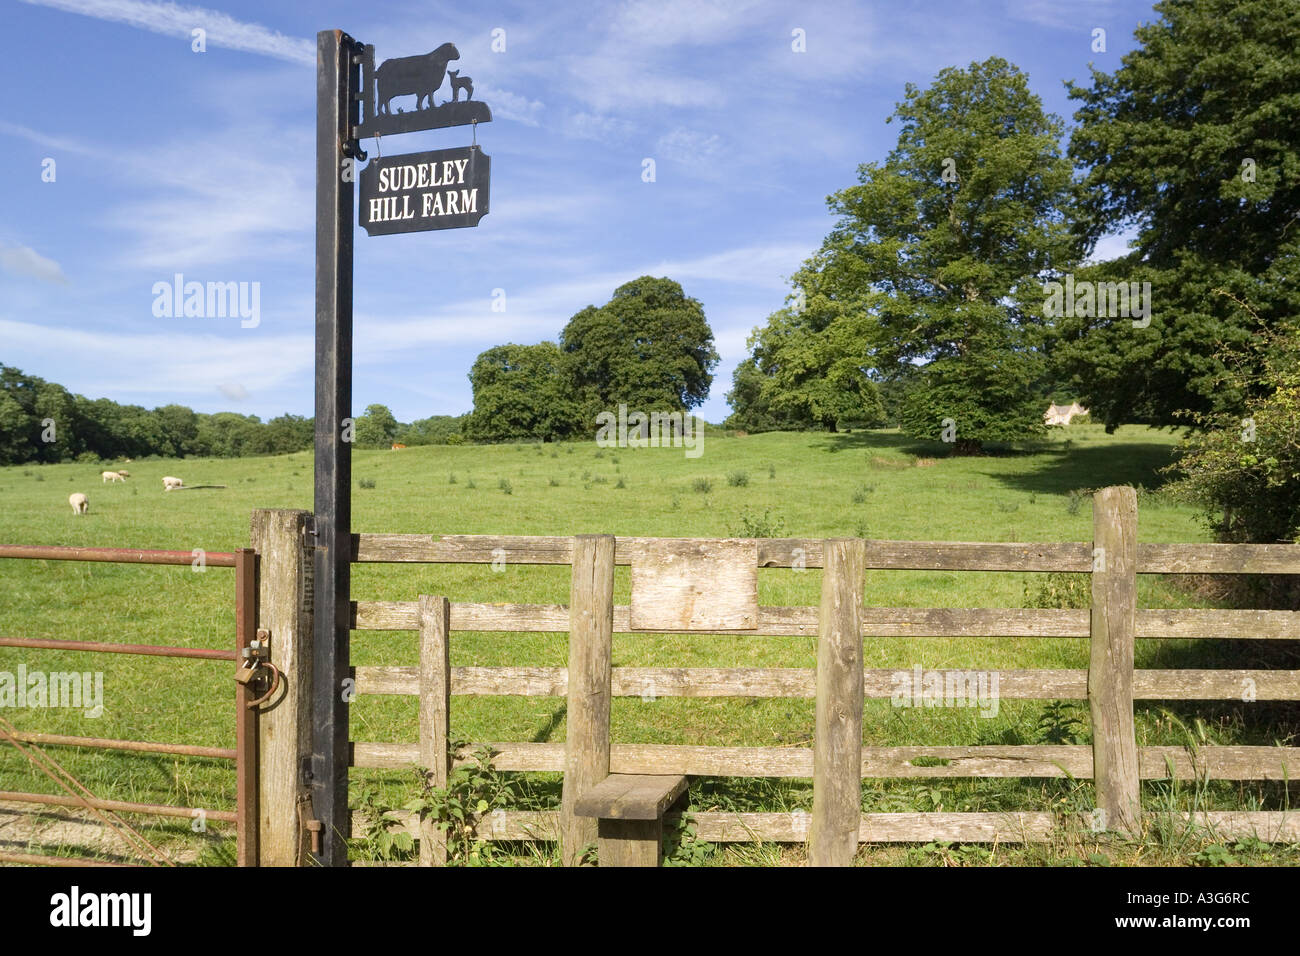 Stile en una acera pública al lado de Sudeley Hill Farm en Cotswolds Gloucestershire Winchcombe cercano Foto de stock